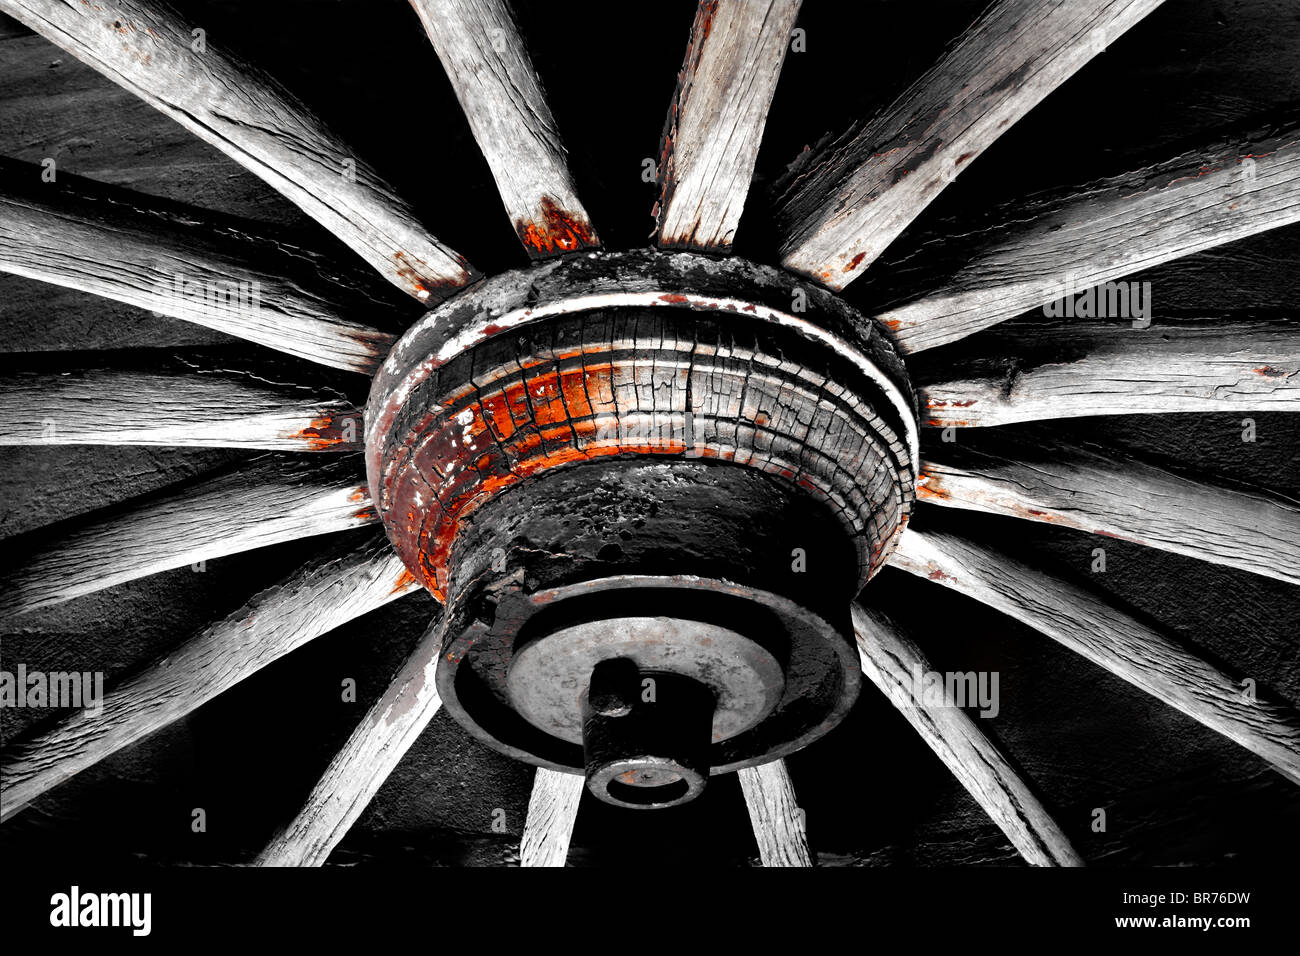 Monocromatico, immagine astratta di un vecchio legno ruota del carro Foto Stock